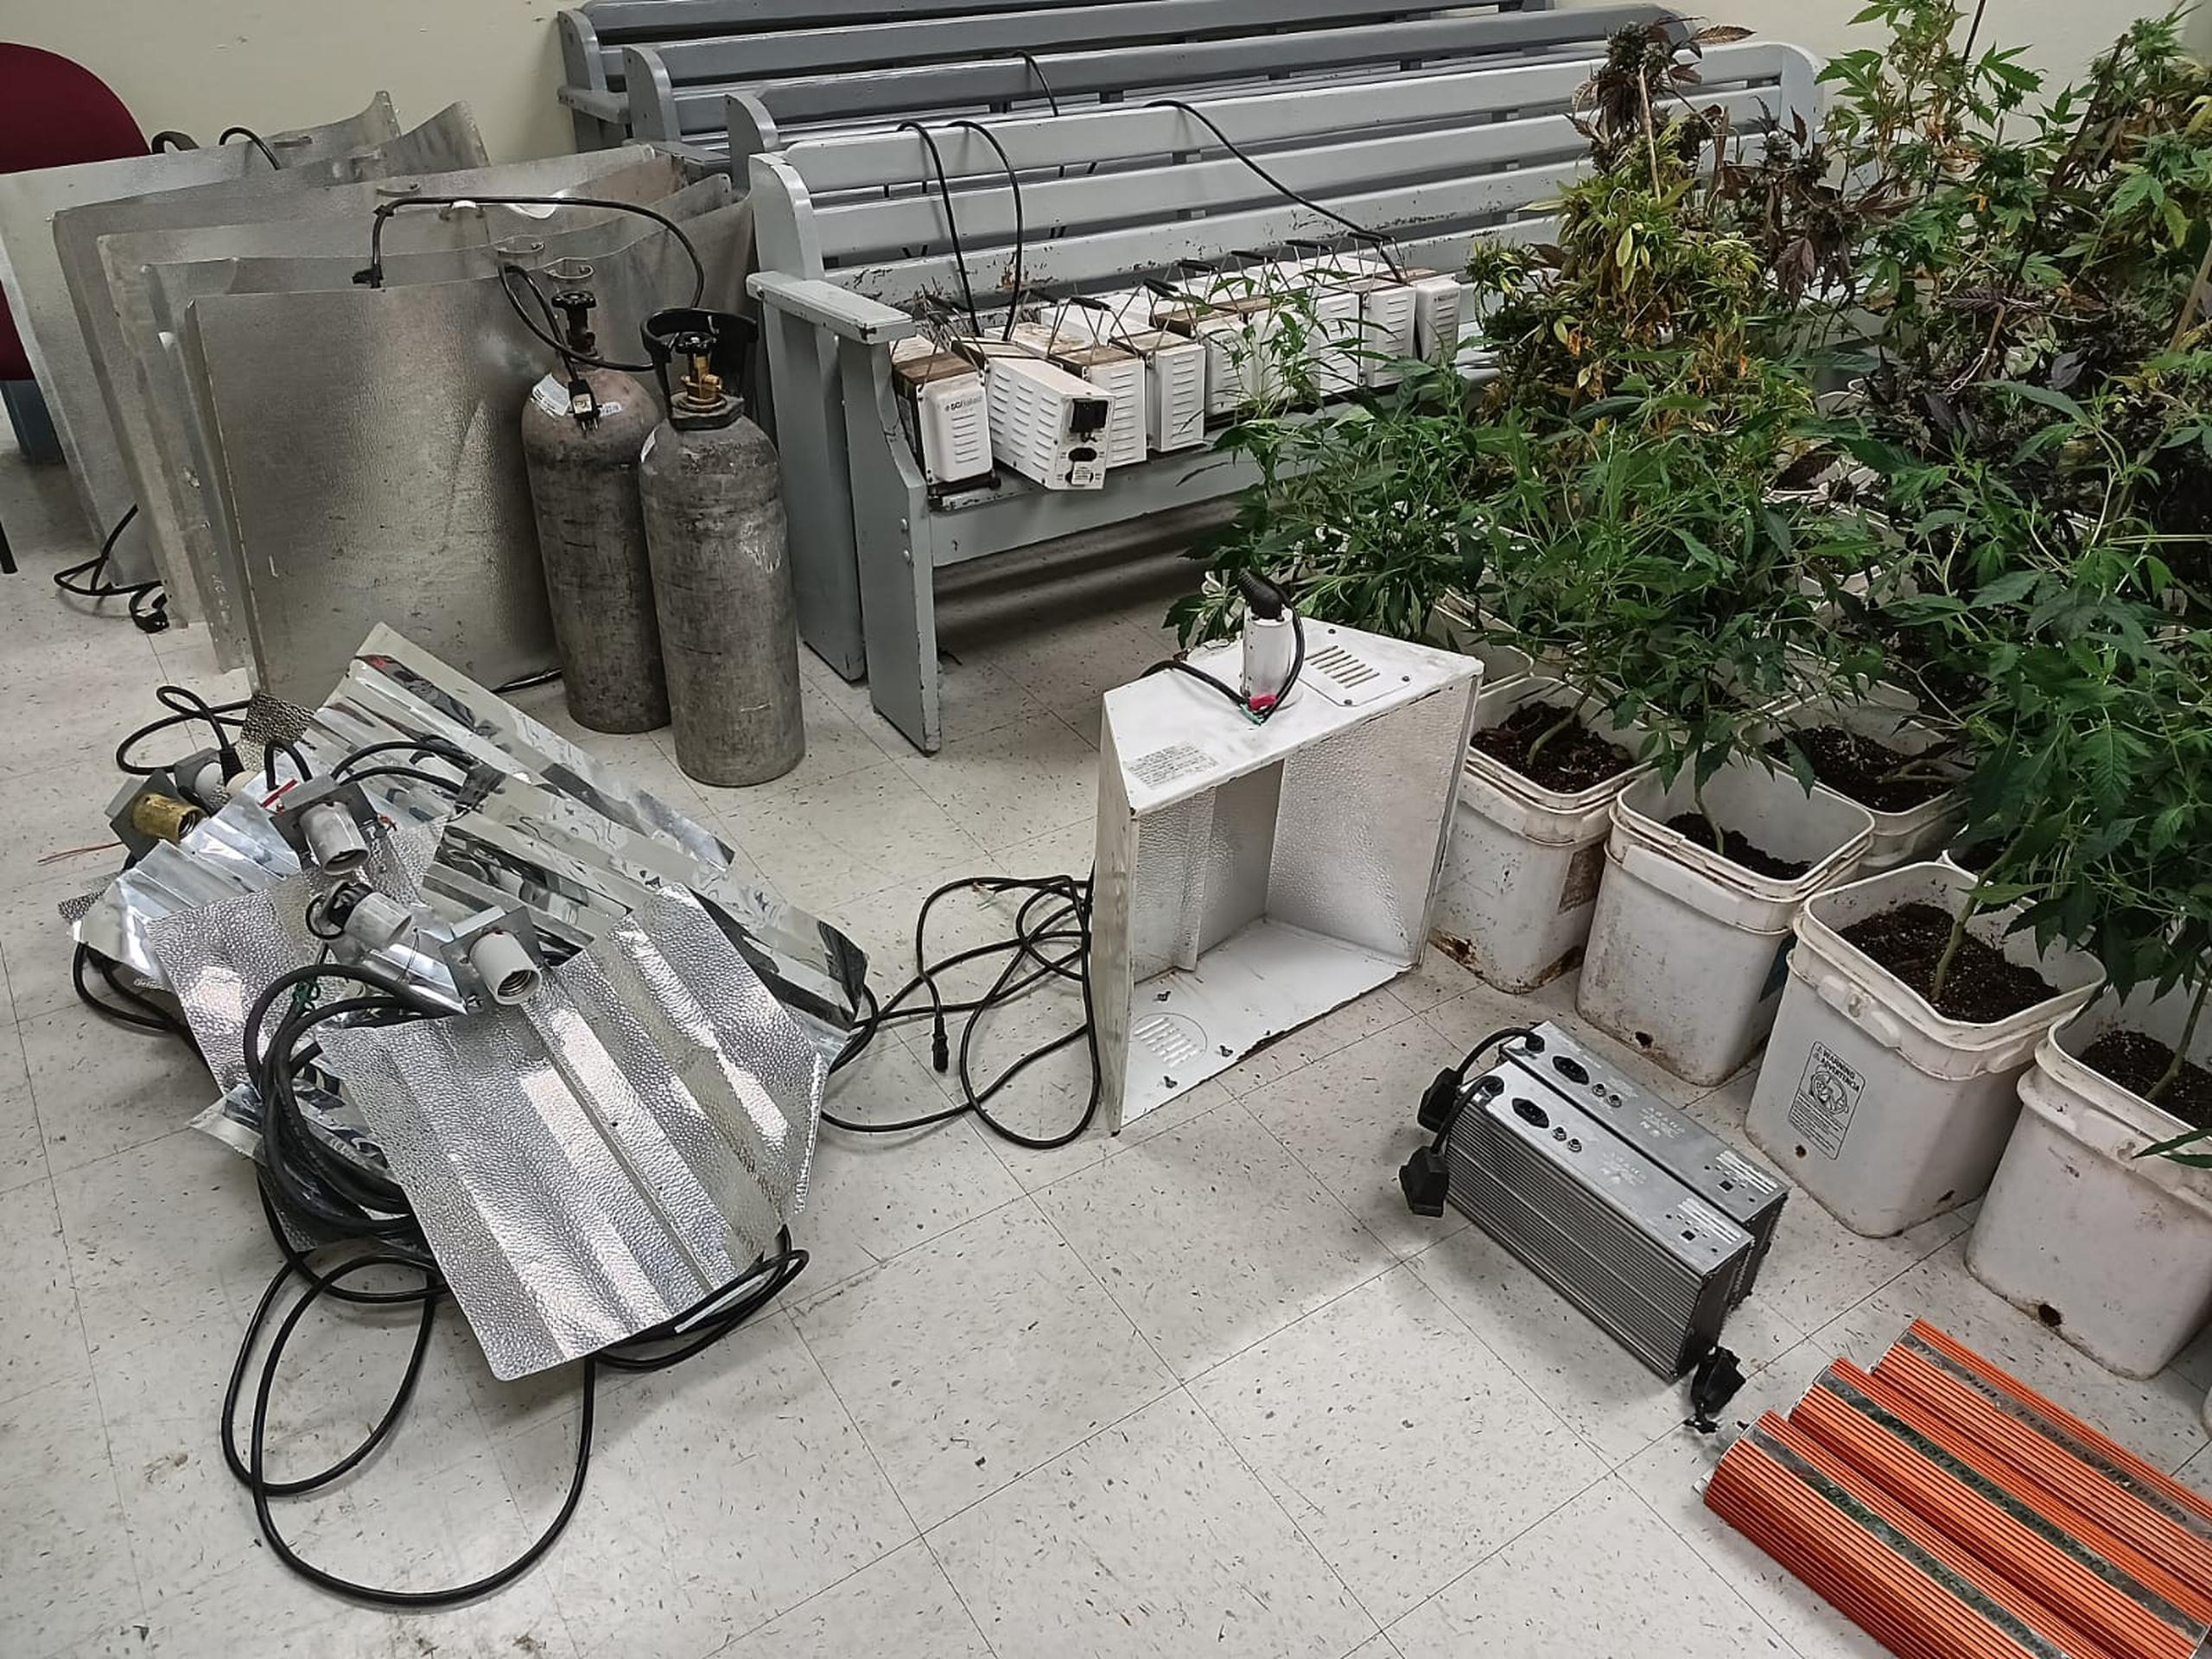 Un invernadero con 142 plantas de marihuana fue ocupado en un taller de reparación de transmisiones de vehículos, en el sector Hoyo del barrio Lavadero, en Hormigueros.